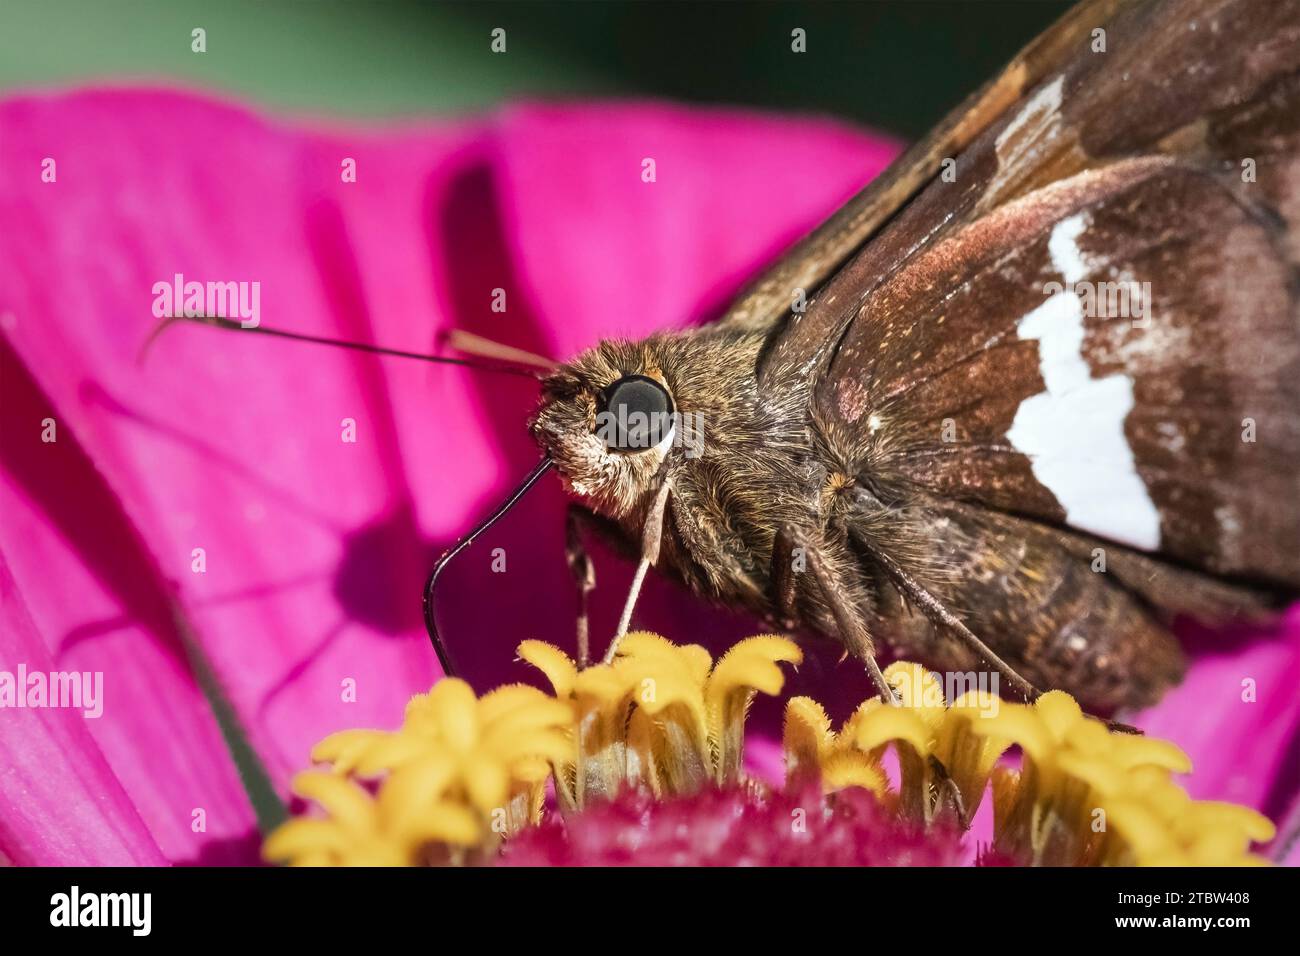 Primo piano estremo di una farfalla Skipper con macchie d'argento (Epargyreus clarus) che utilizza la sua lingua proboscica per recuperare il nettare da un fiore di zinnia rosa Foto Stock